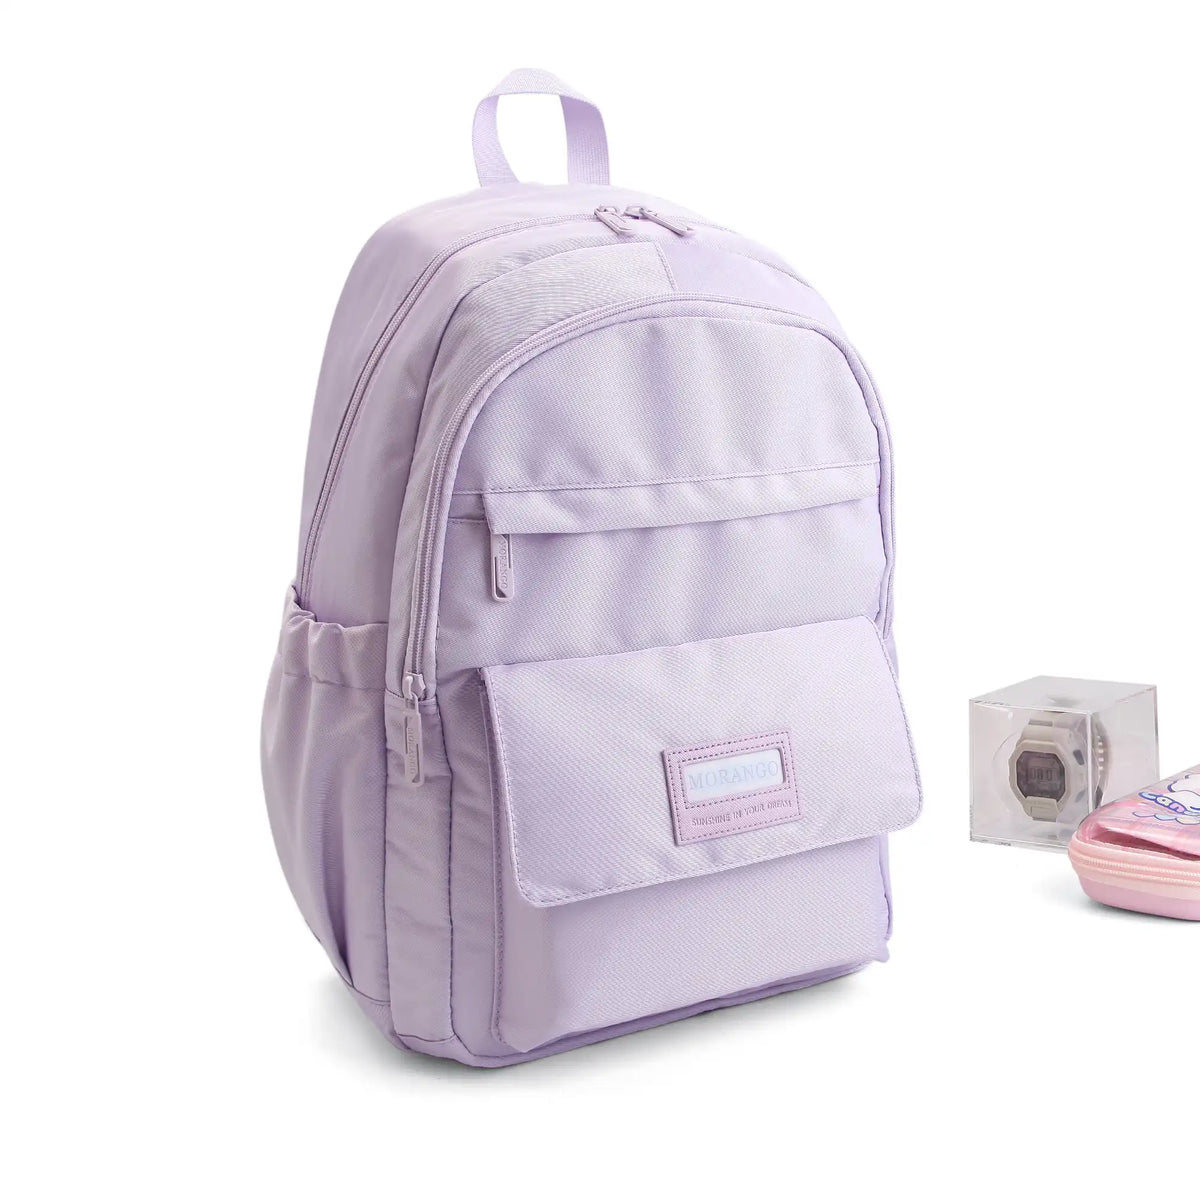 Backpack for Girls